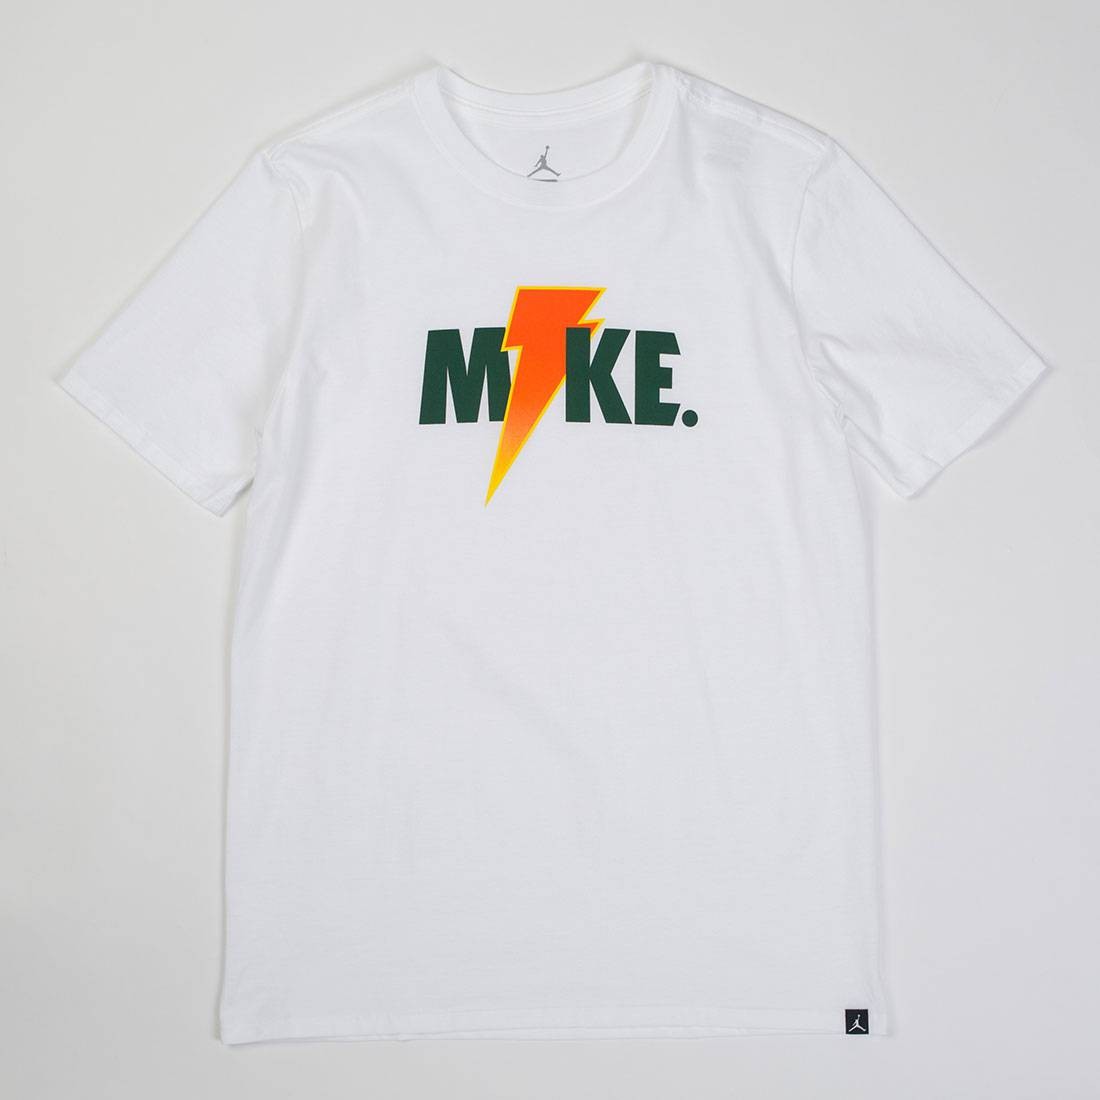 mike sportswear